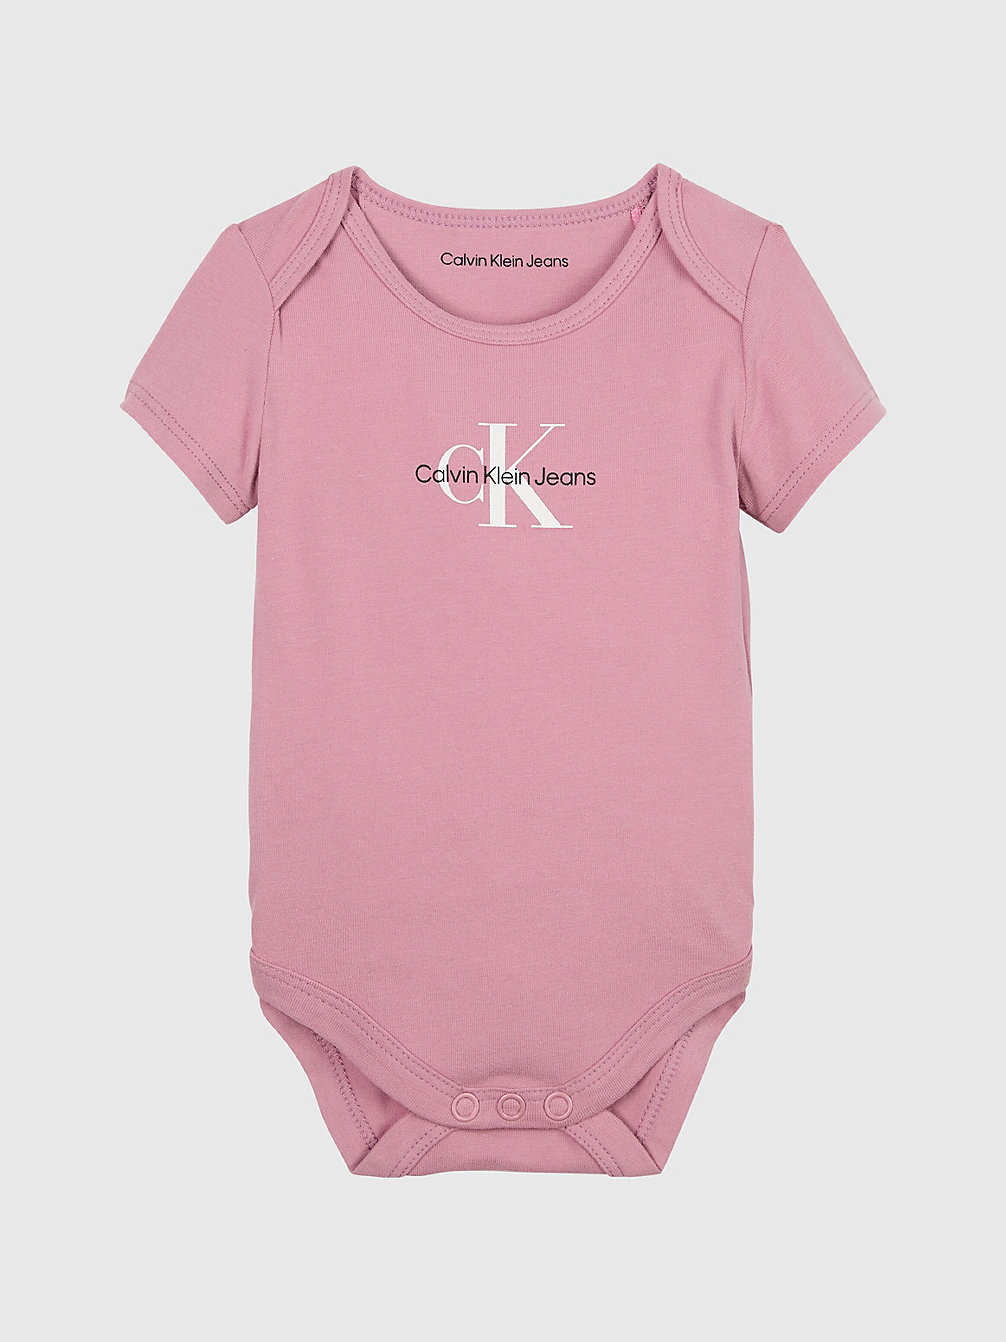 FOXGLOVE > Logo-Baby-Body > undefined newborn - Calvin Klein